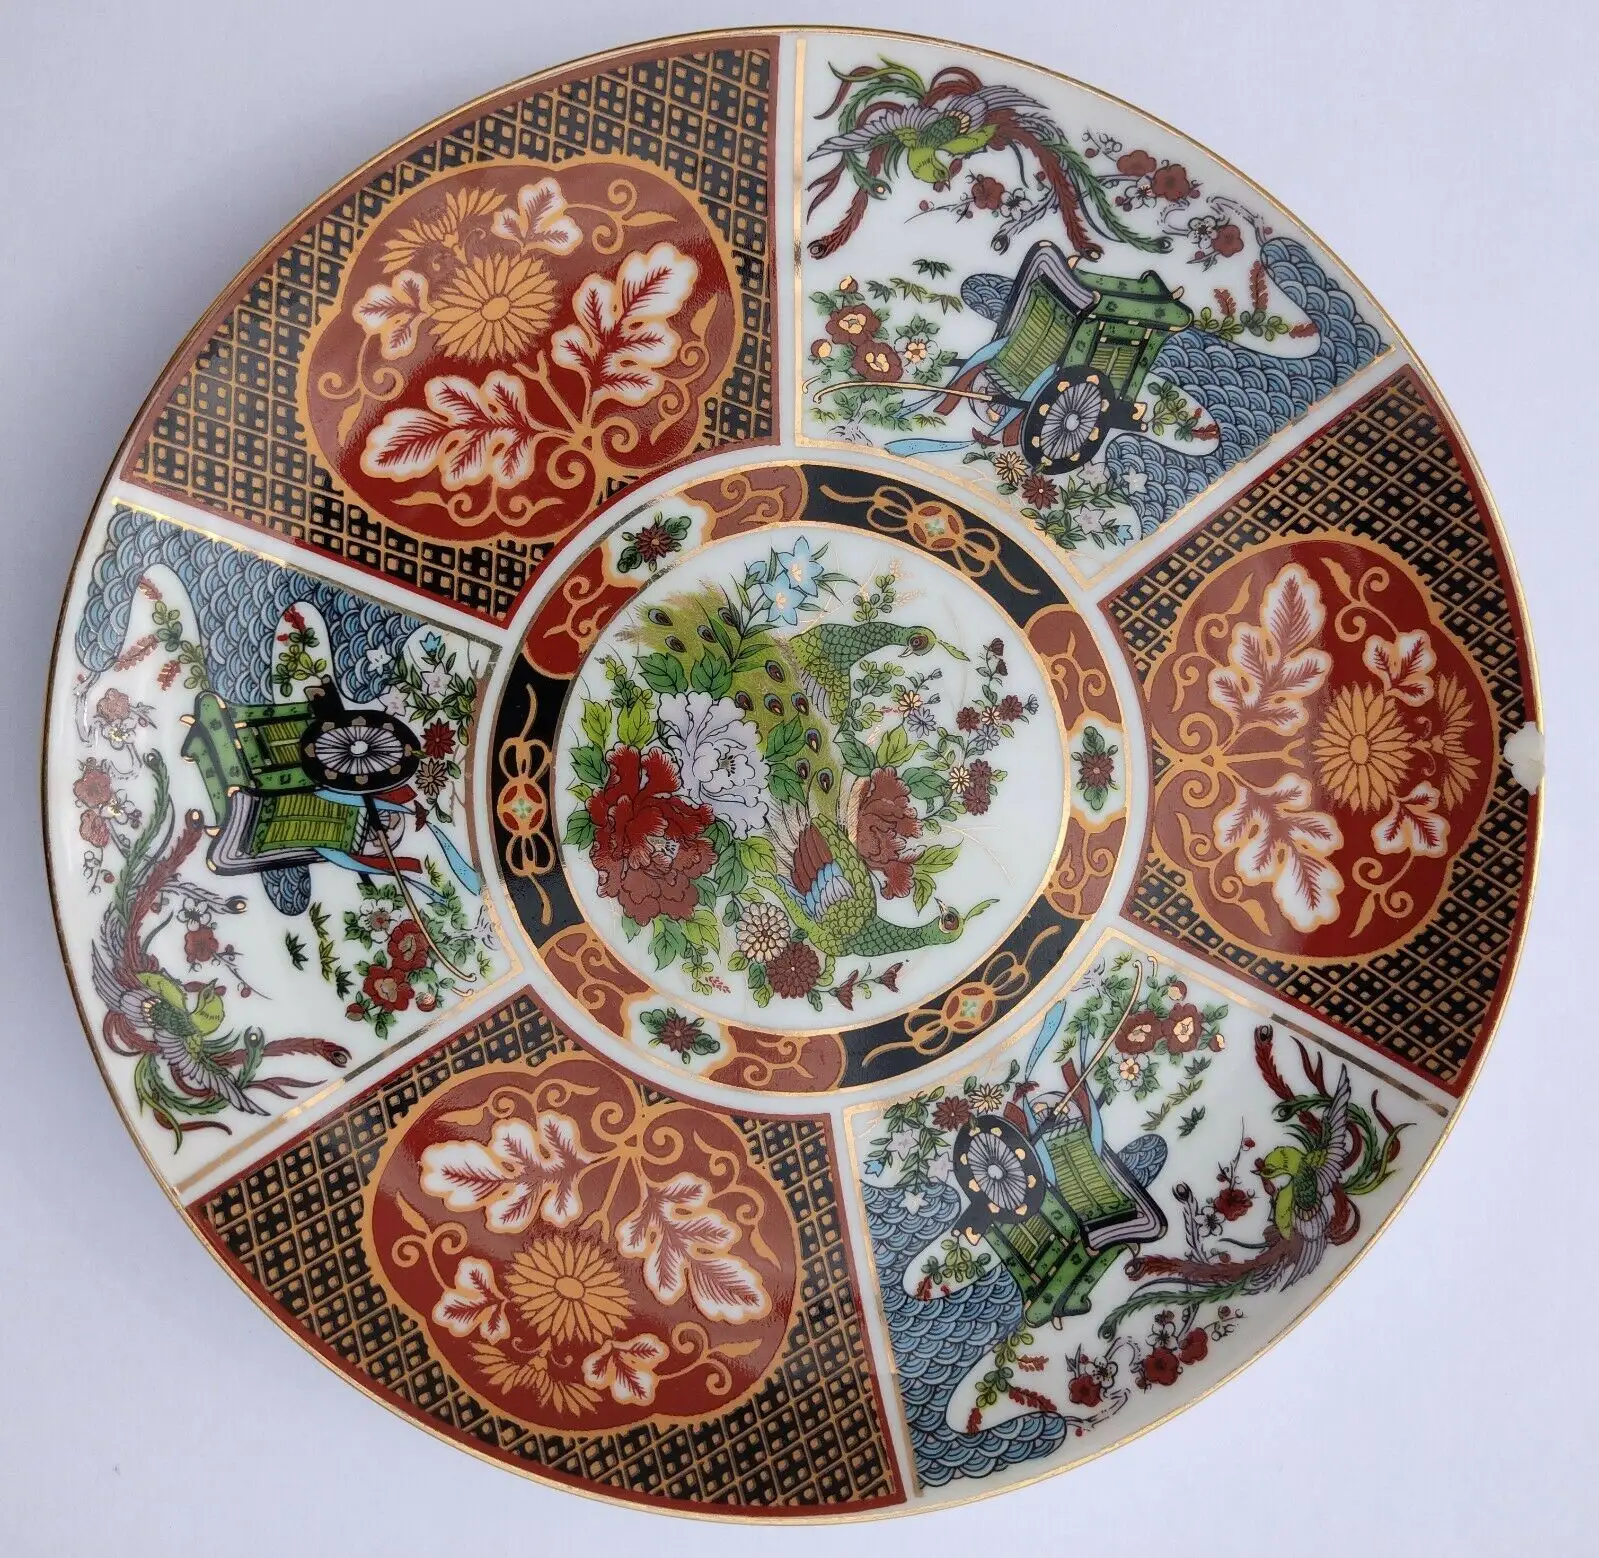 Plato japonés de porcelana Imari policromo, decoración Floral y aviar, plato de porcelana japonés fino